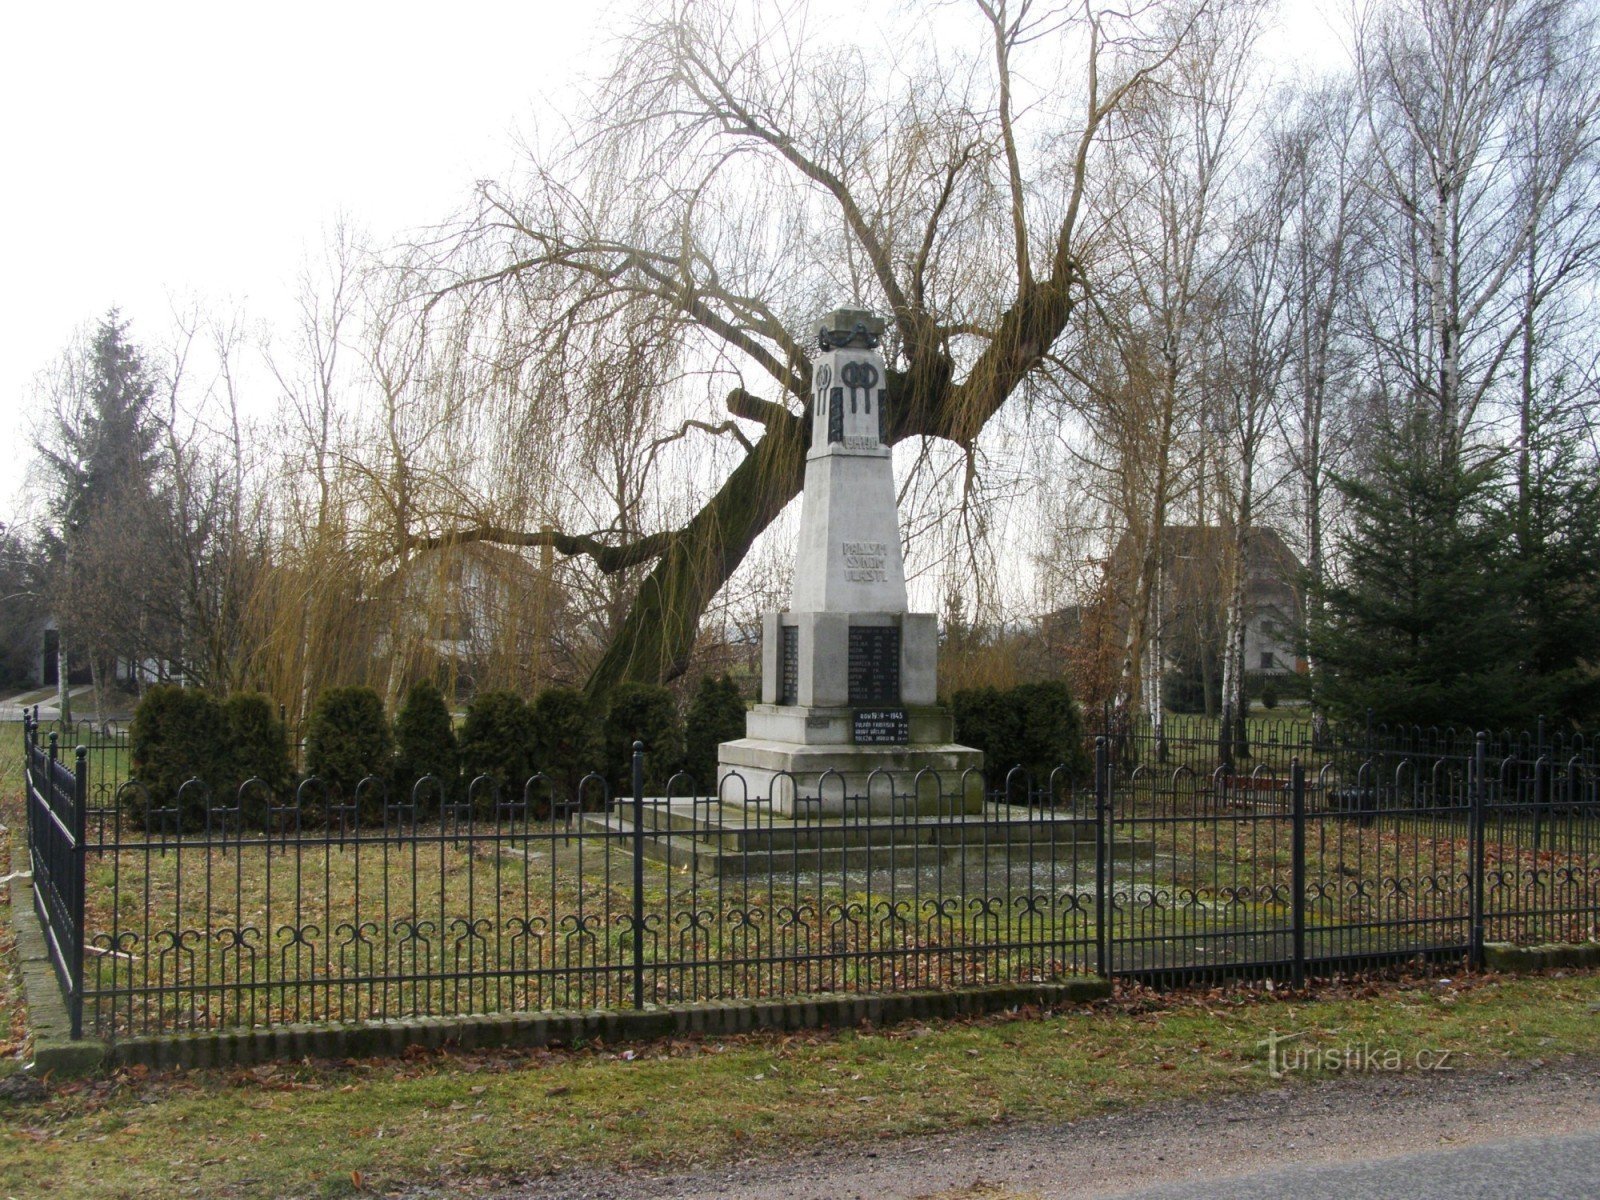 Roudnice - monument aux victimes de la Première Guerre mondiale et de la Seconde Guerre mondiale guerre